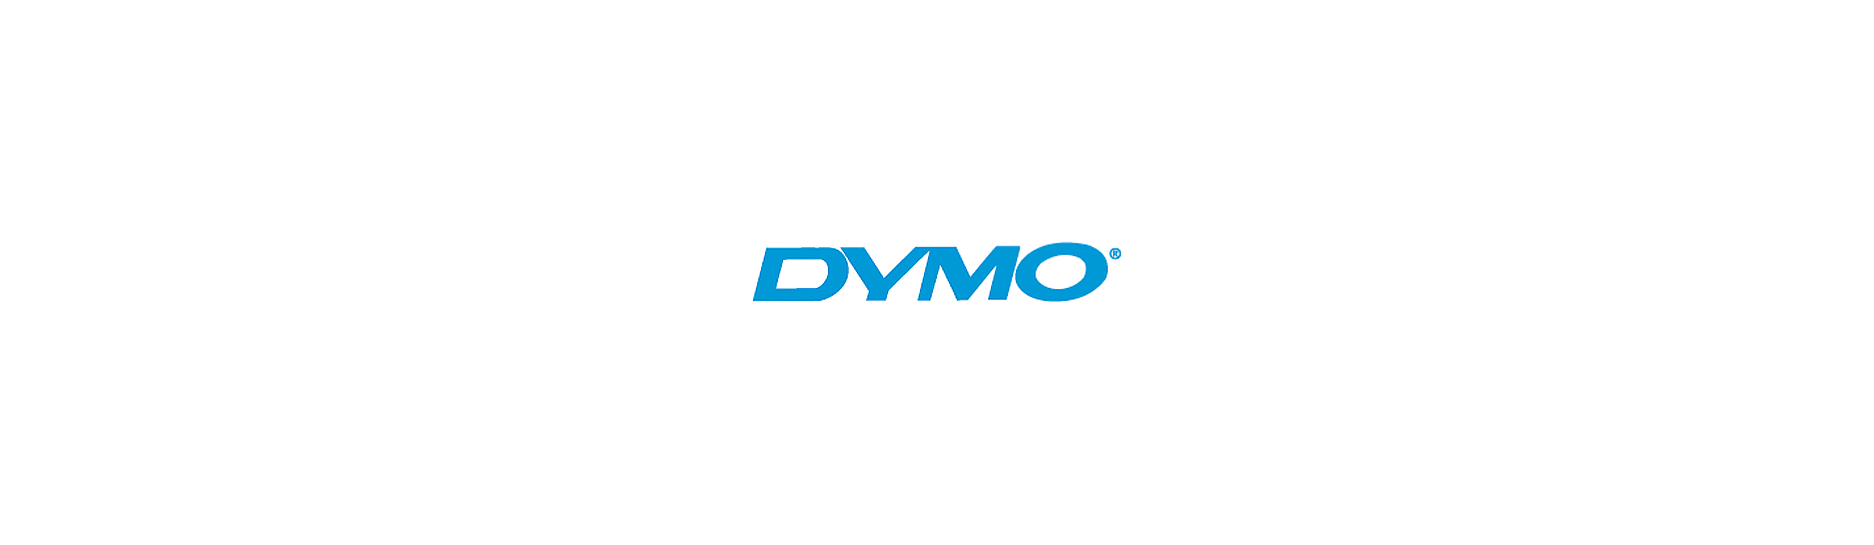 Dymo D1 Labels